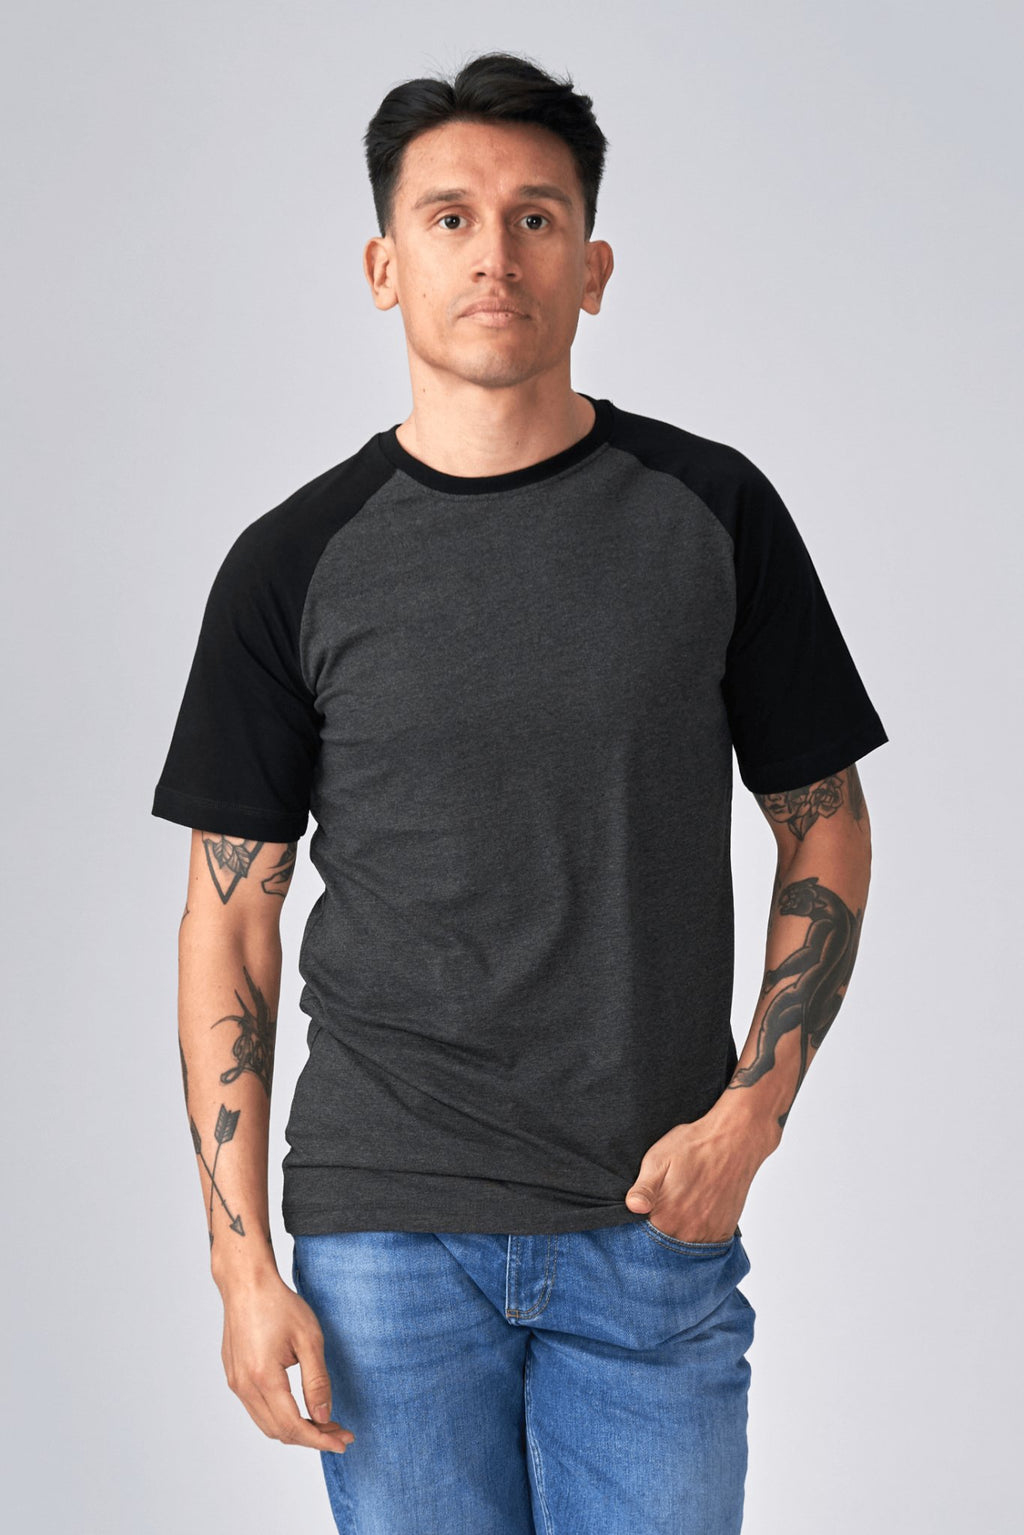 Basic Raglan T-shirt-γκρι μαύρο-σκοτάδι